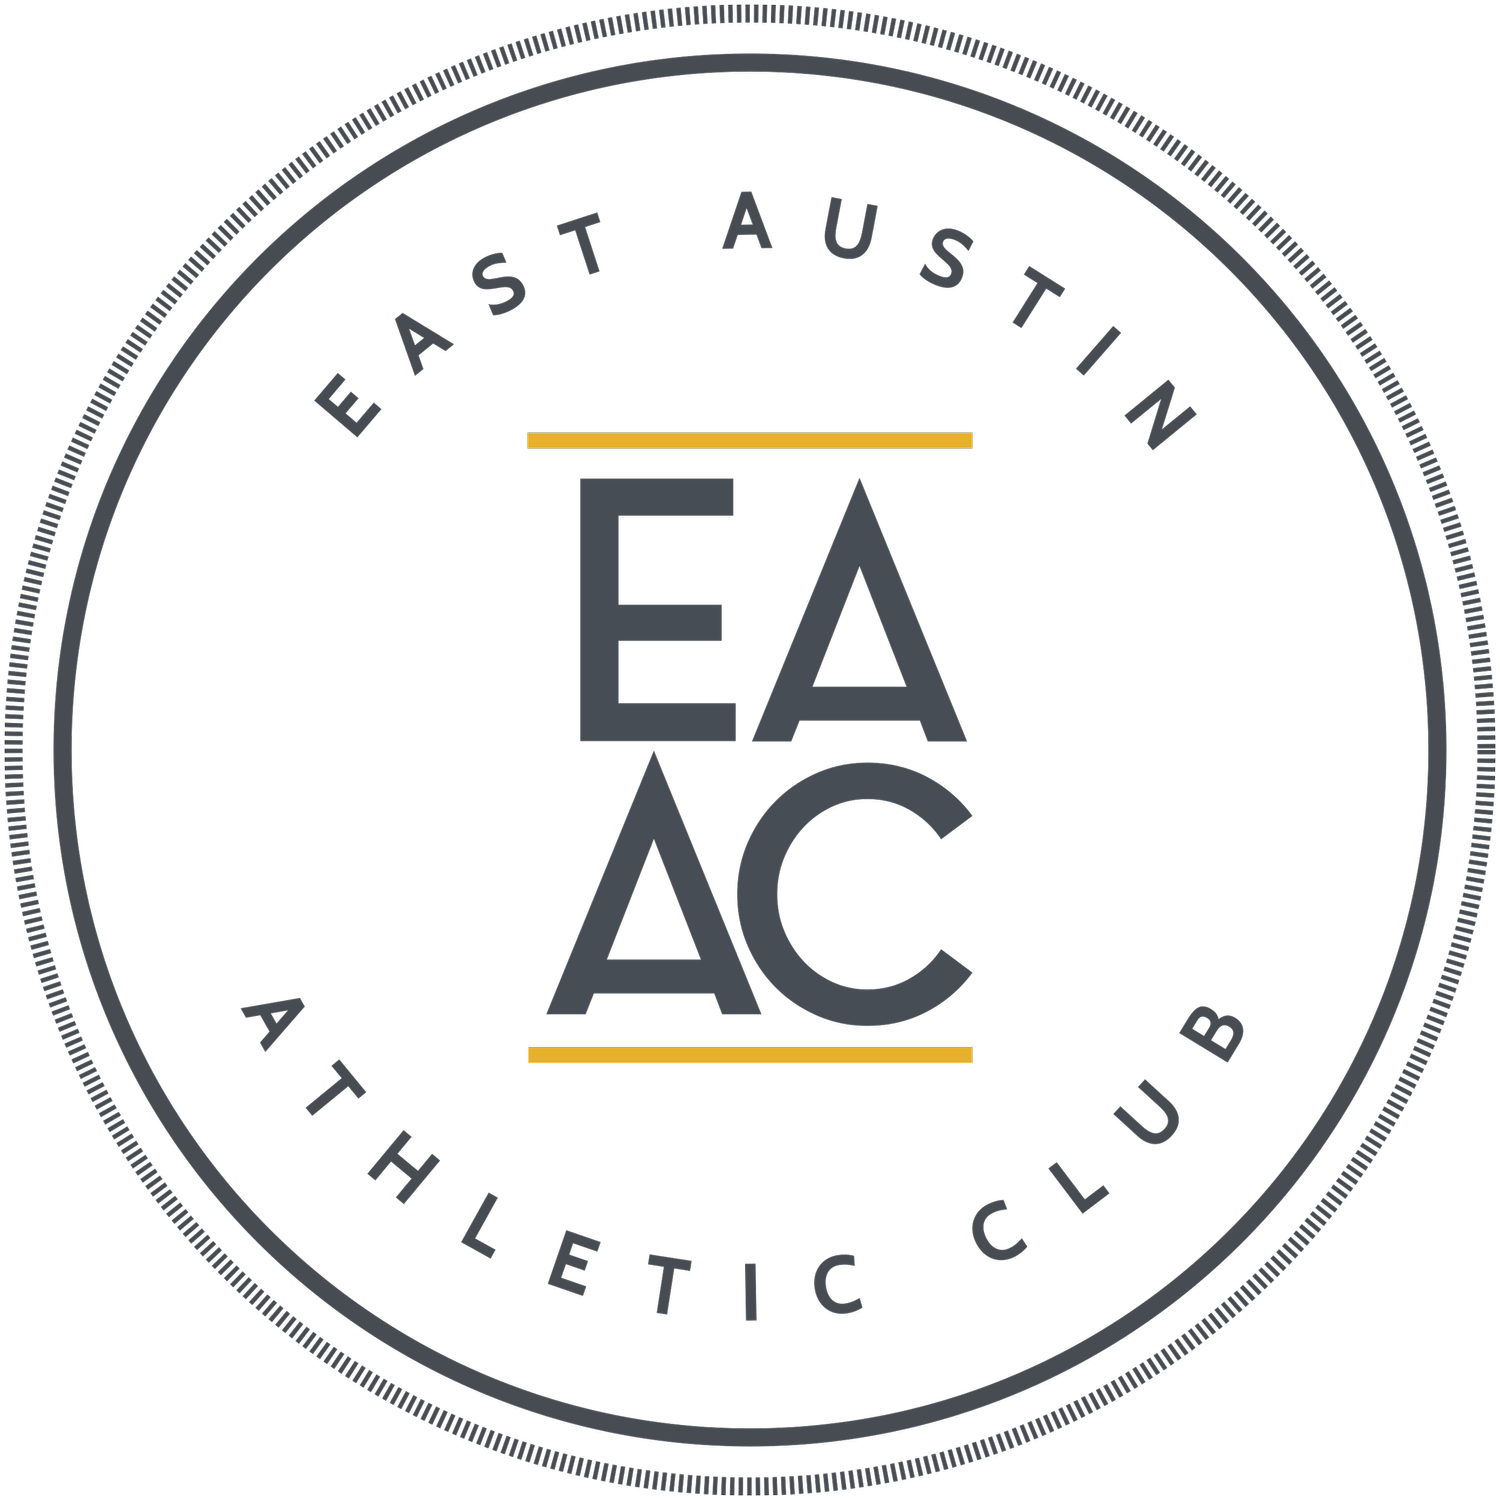 East Austin Athletic Club - Best Community Gym in Austin